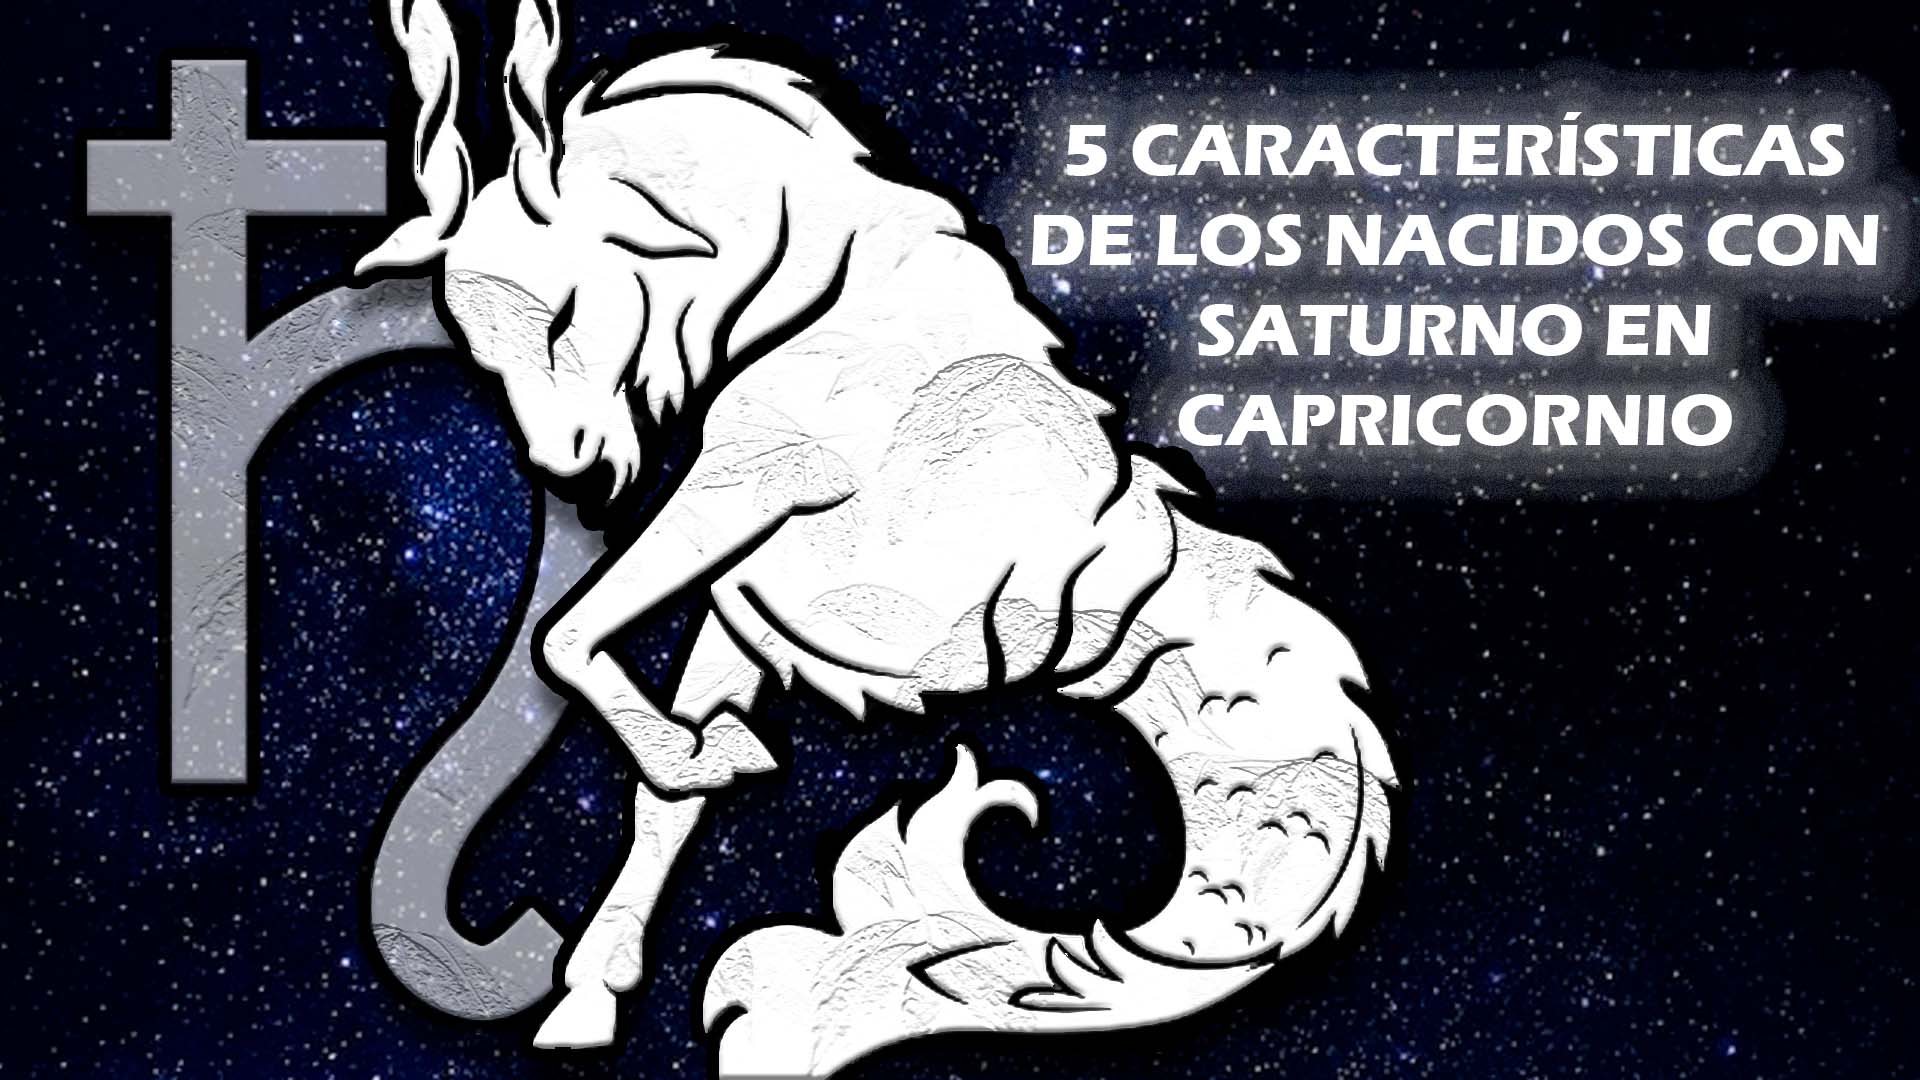 5 Características de los nacidos con Saturno en Capricornio